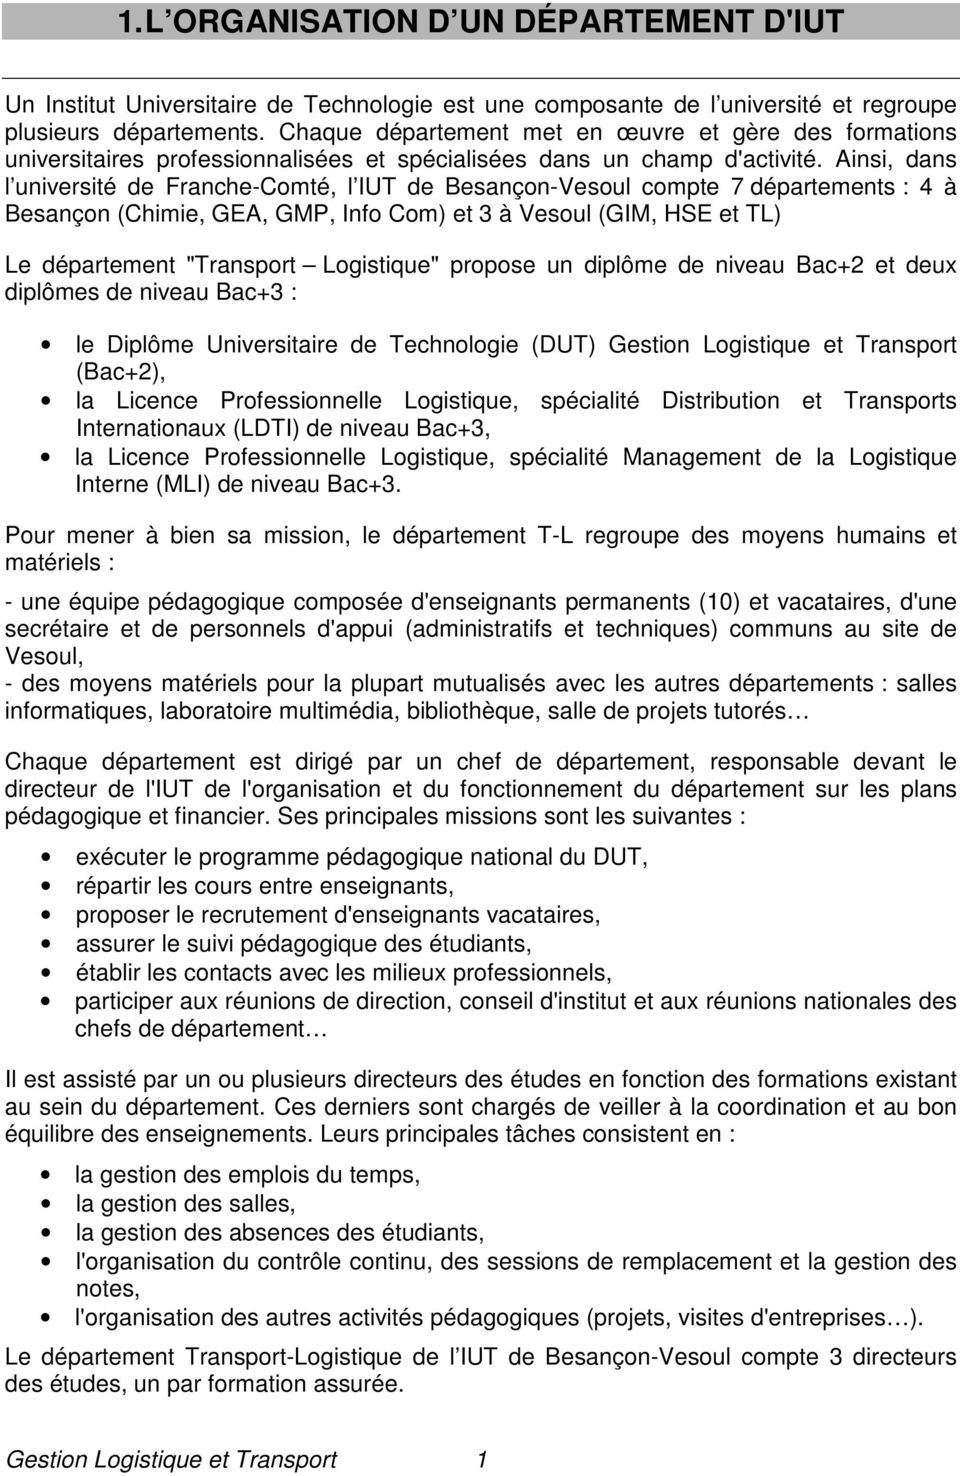 Ainsi, dans l université de Franche-Comté, l IUT de Besançon-Vesoul compte 7 départements : 4 à Besançon (Chimie, GEA, GMP, Info Com) et 3 à Vesoul (GIM, HSE et TL) Le département "Transport